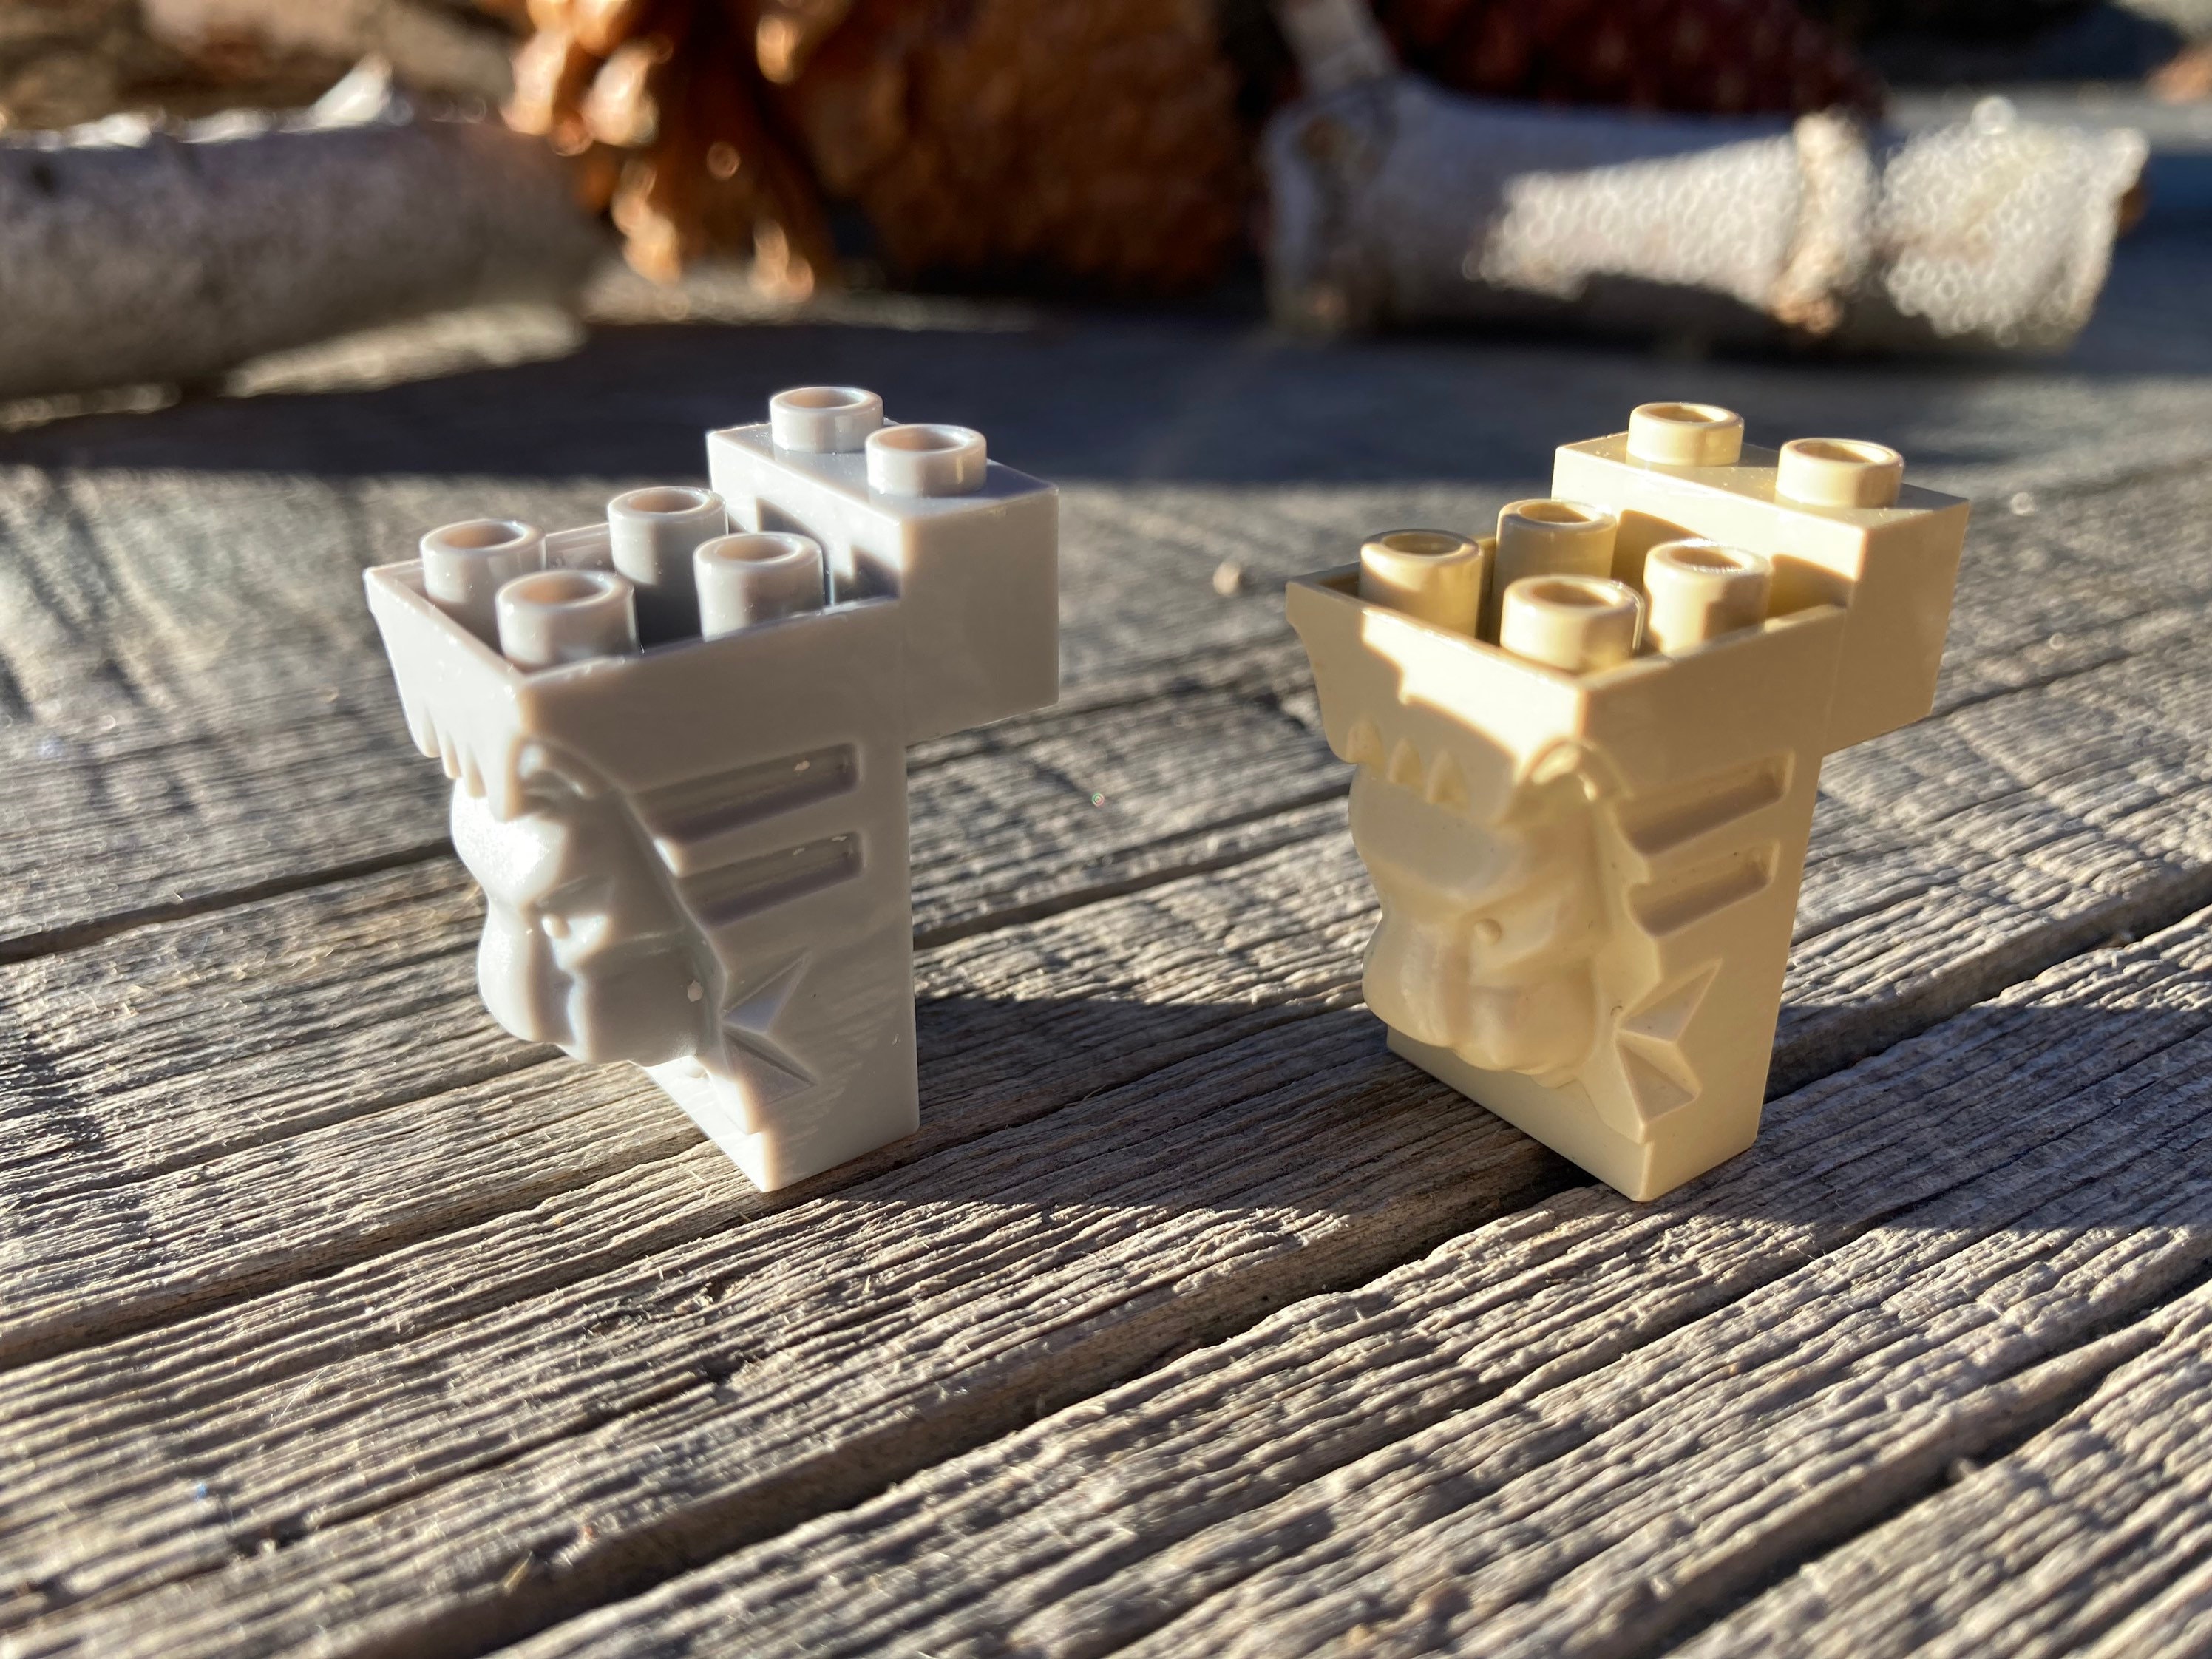 Un lot de brique 12 pièces pour faire des fabrications de marque Lego.